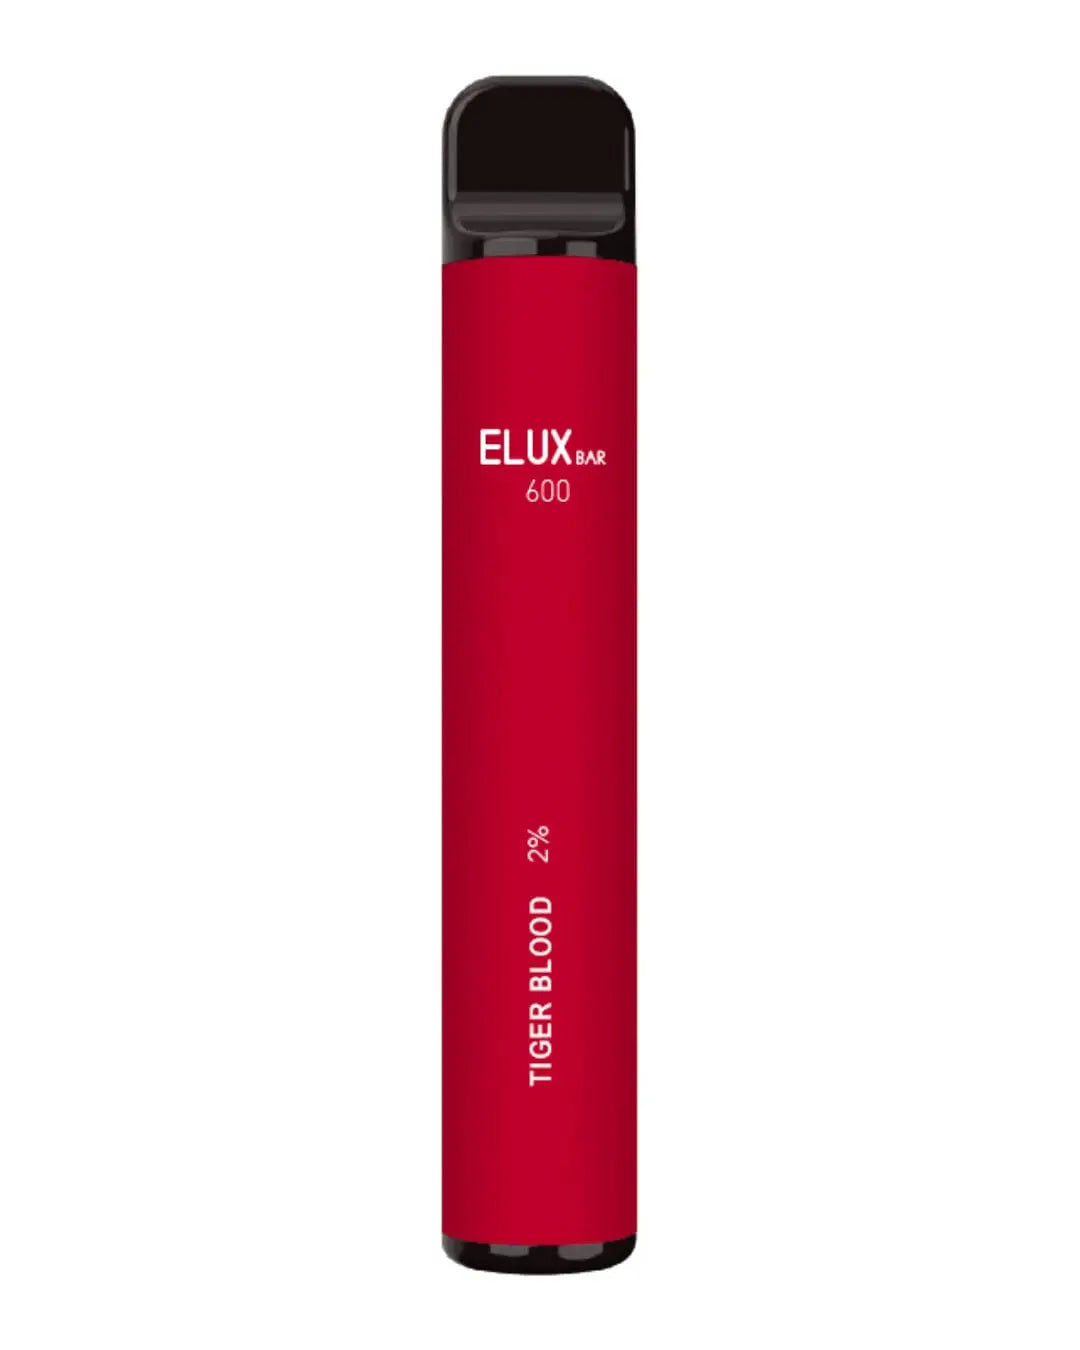 Elux Bar 600 Tiger Blood Disposable Vapes